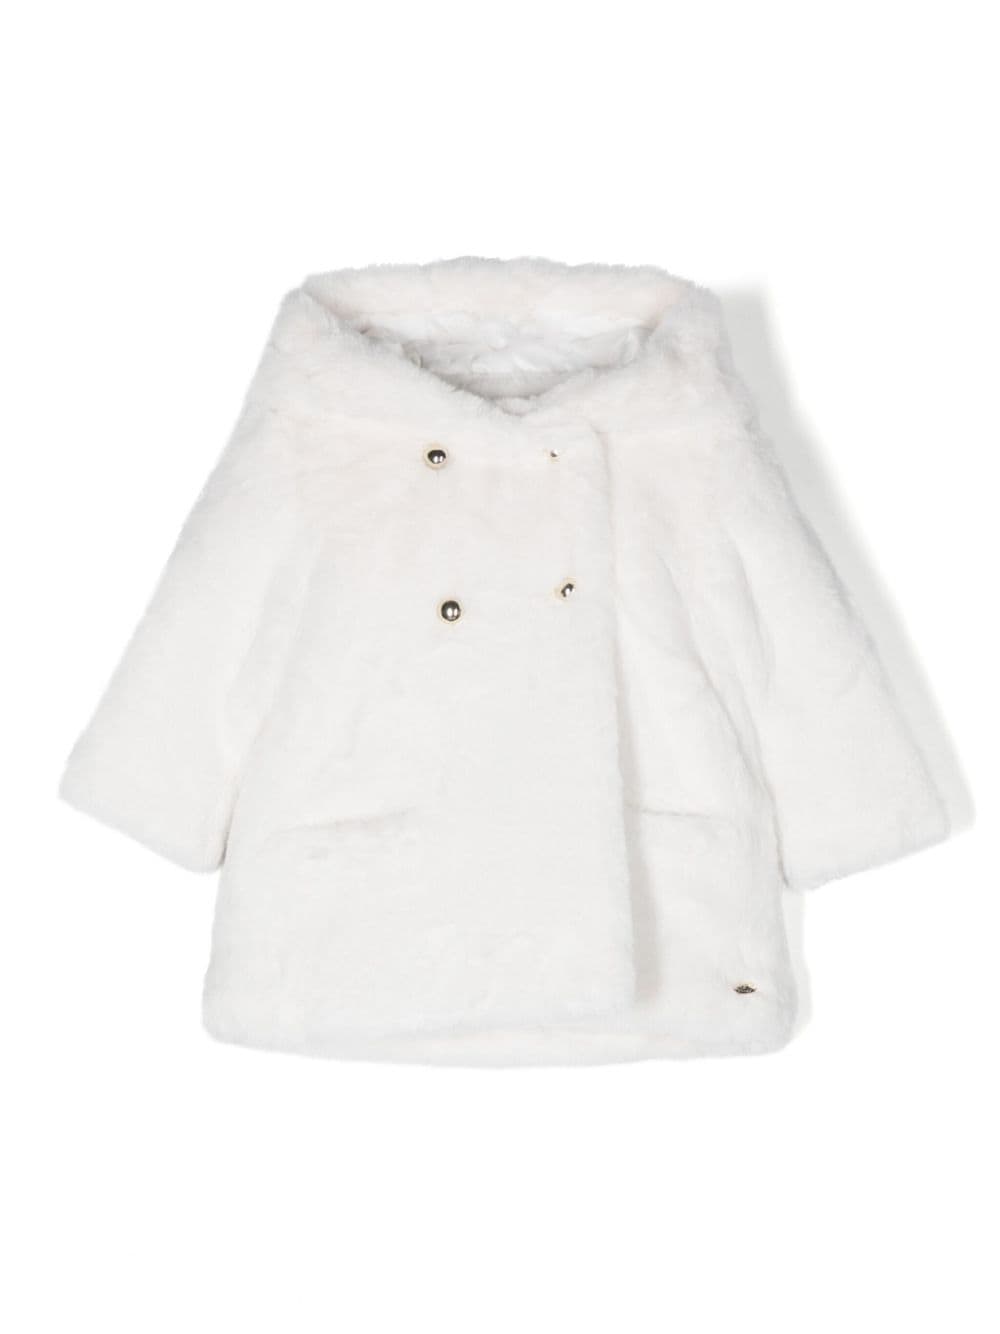 Bébé manteau blanc